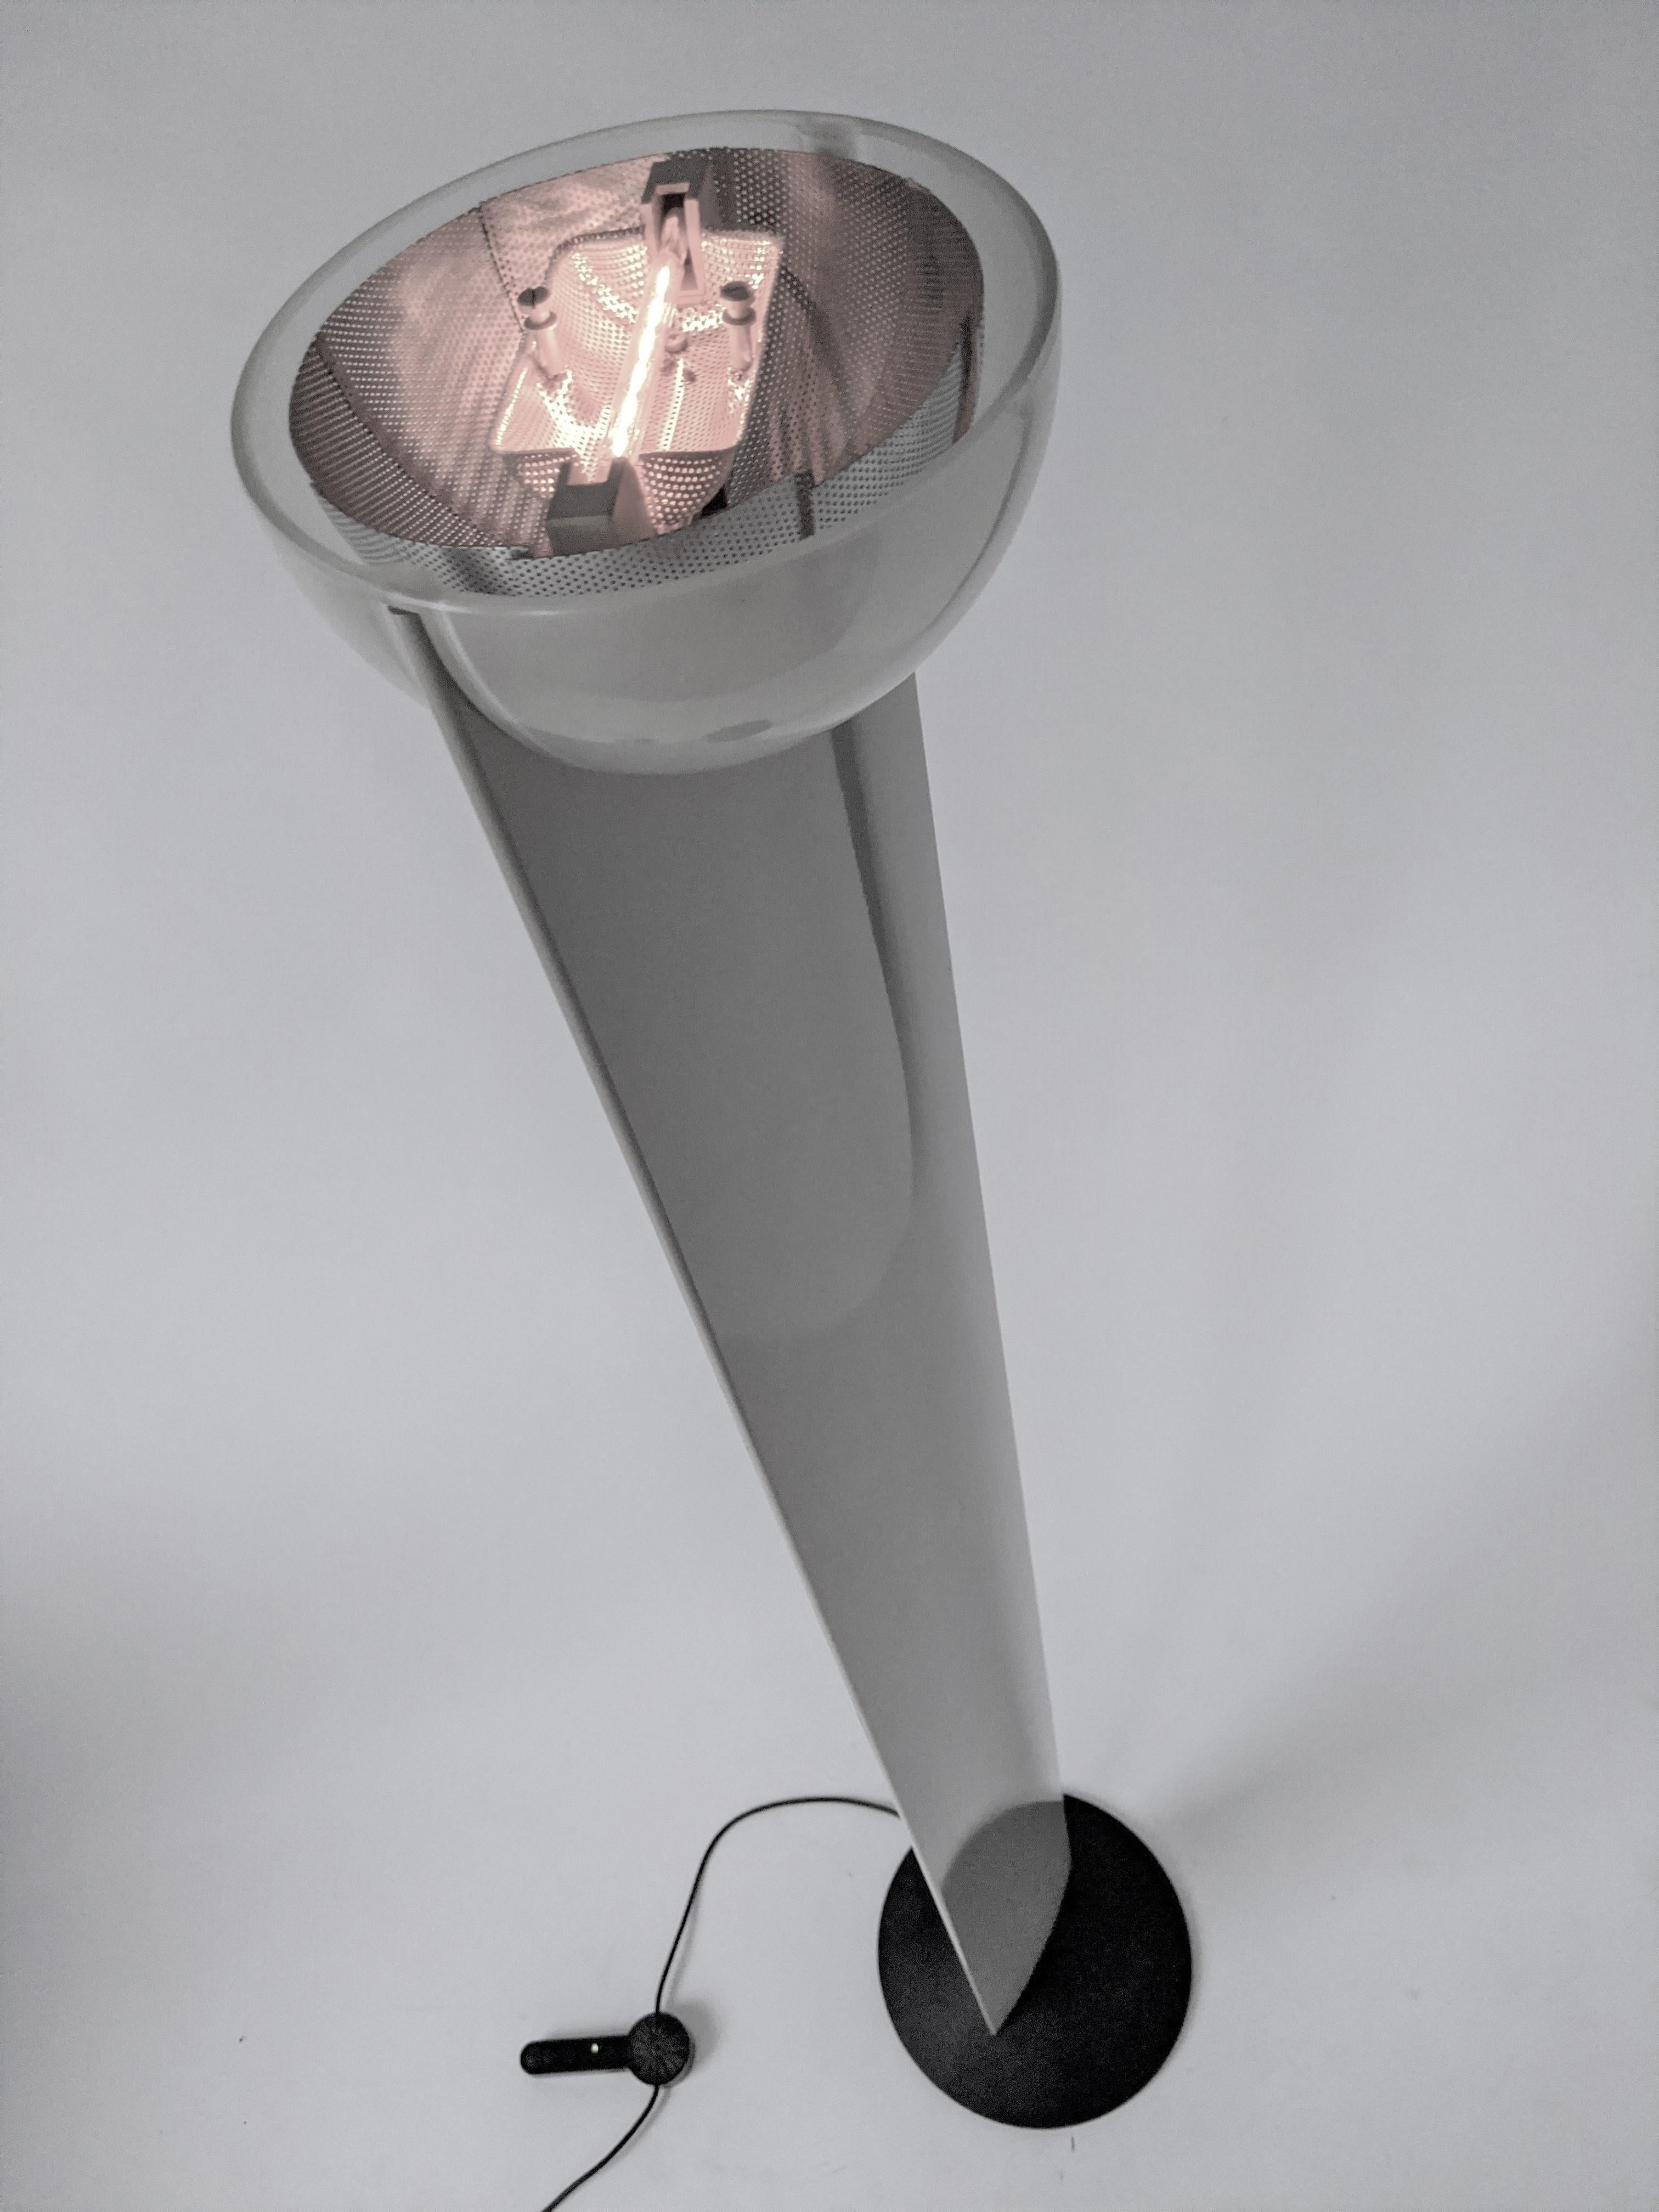 Grand lampadaire halogène avec grille métallique percée réglable à l'intérieur de l'abat-jour en verre pour atténuer la lumière sur les côtés. 

Un gradateur à pied d'origine très précis pour régler l'ambiance appropriée.

Construction solide et